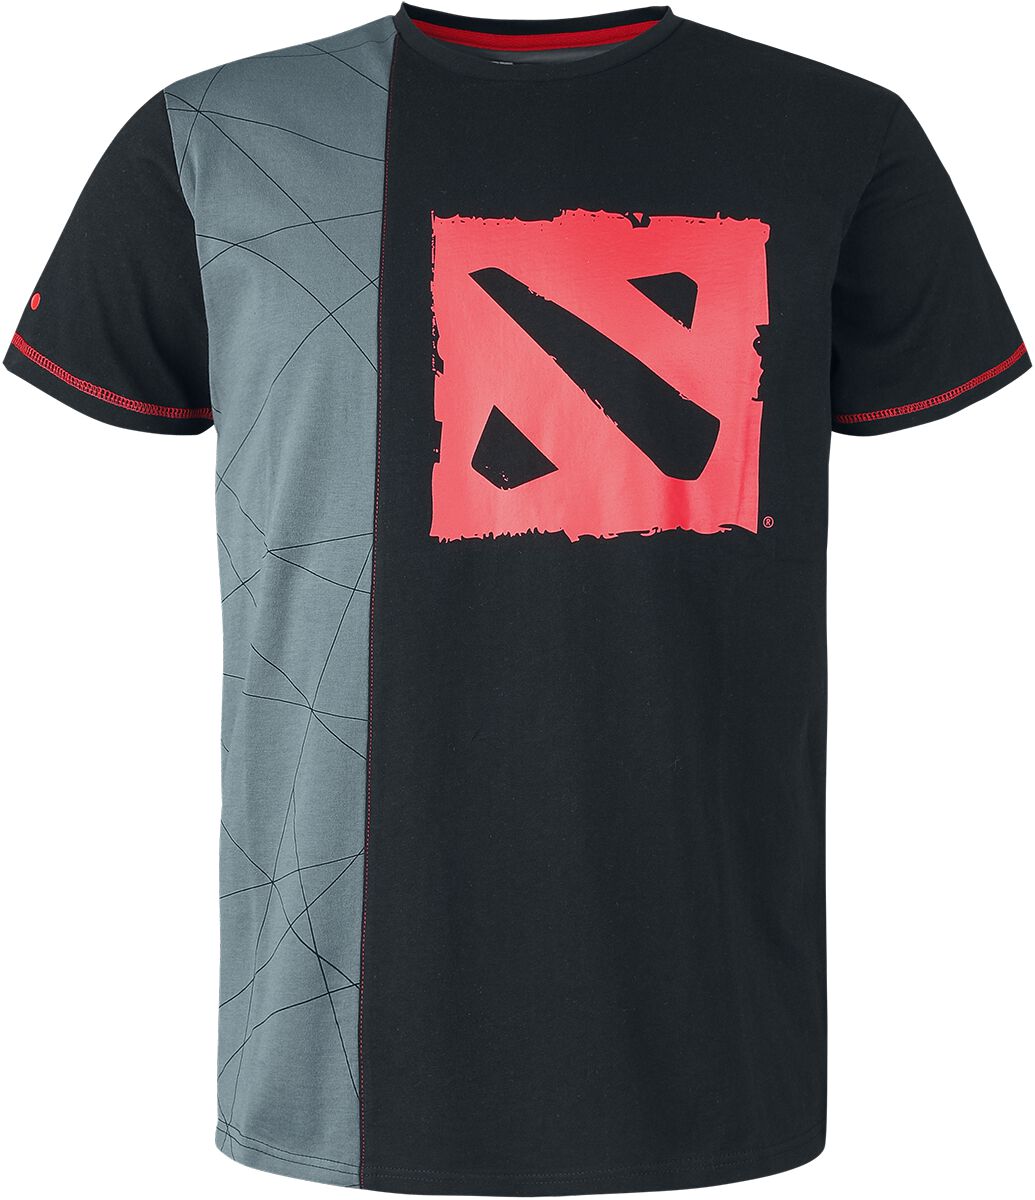 DOTA 2 - Gaming T-Shirt - Team Up - S bis L - für Männer - Größe M - schwarz/grau  - EMP exklusives Merchandise!